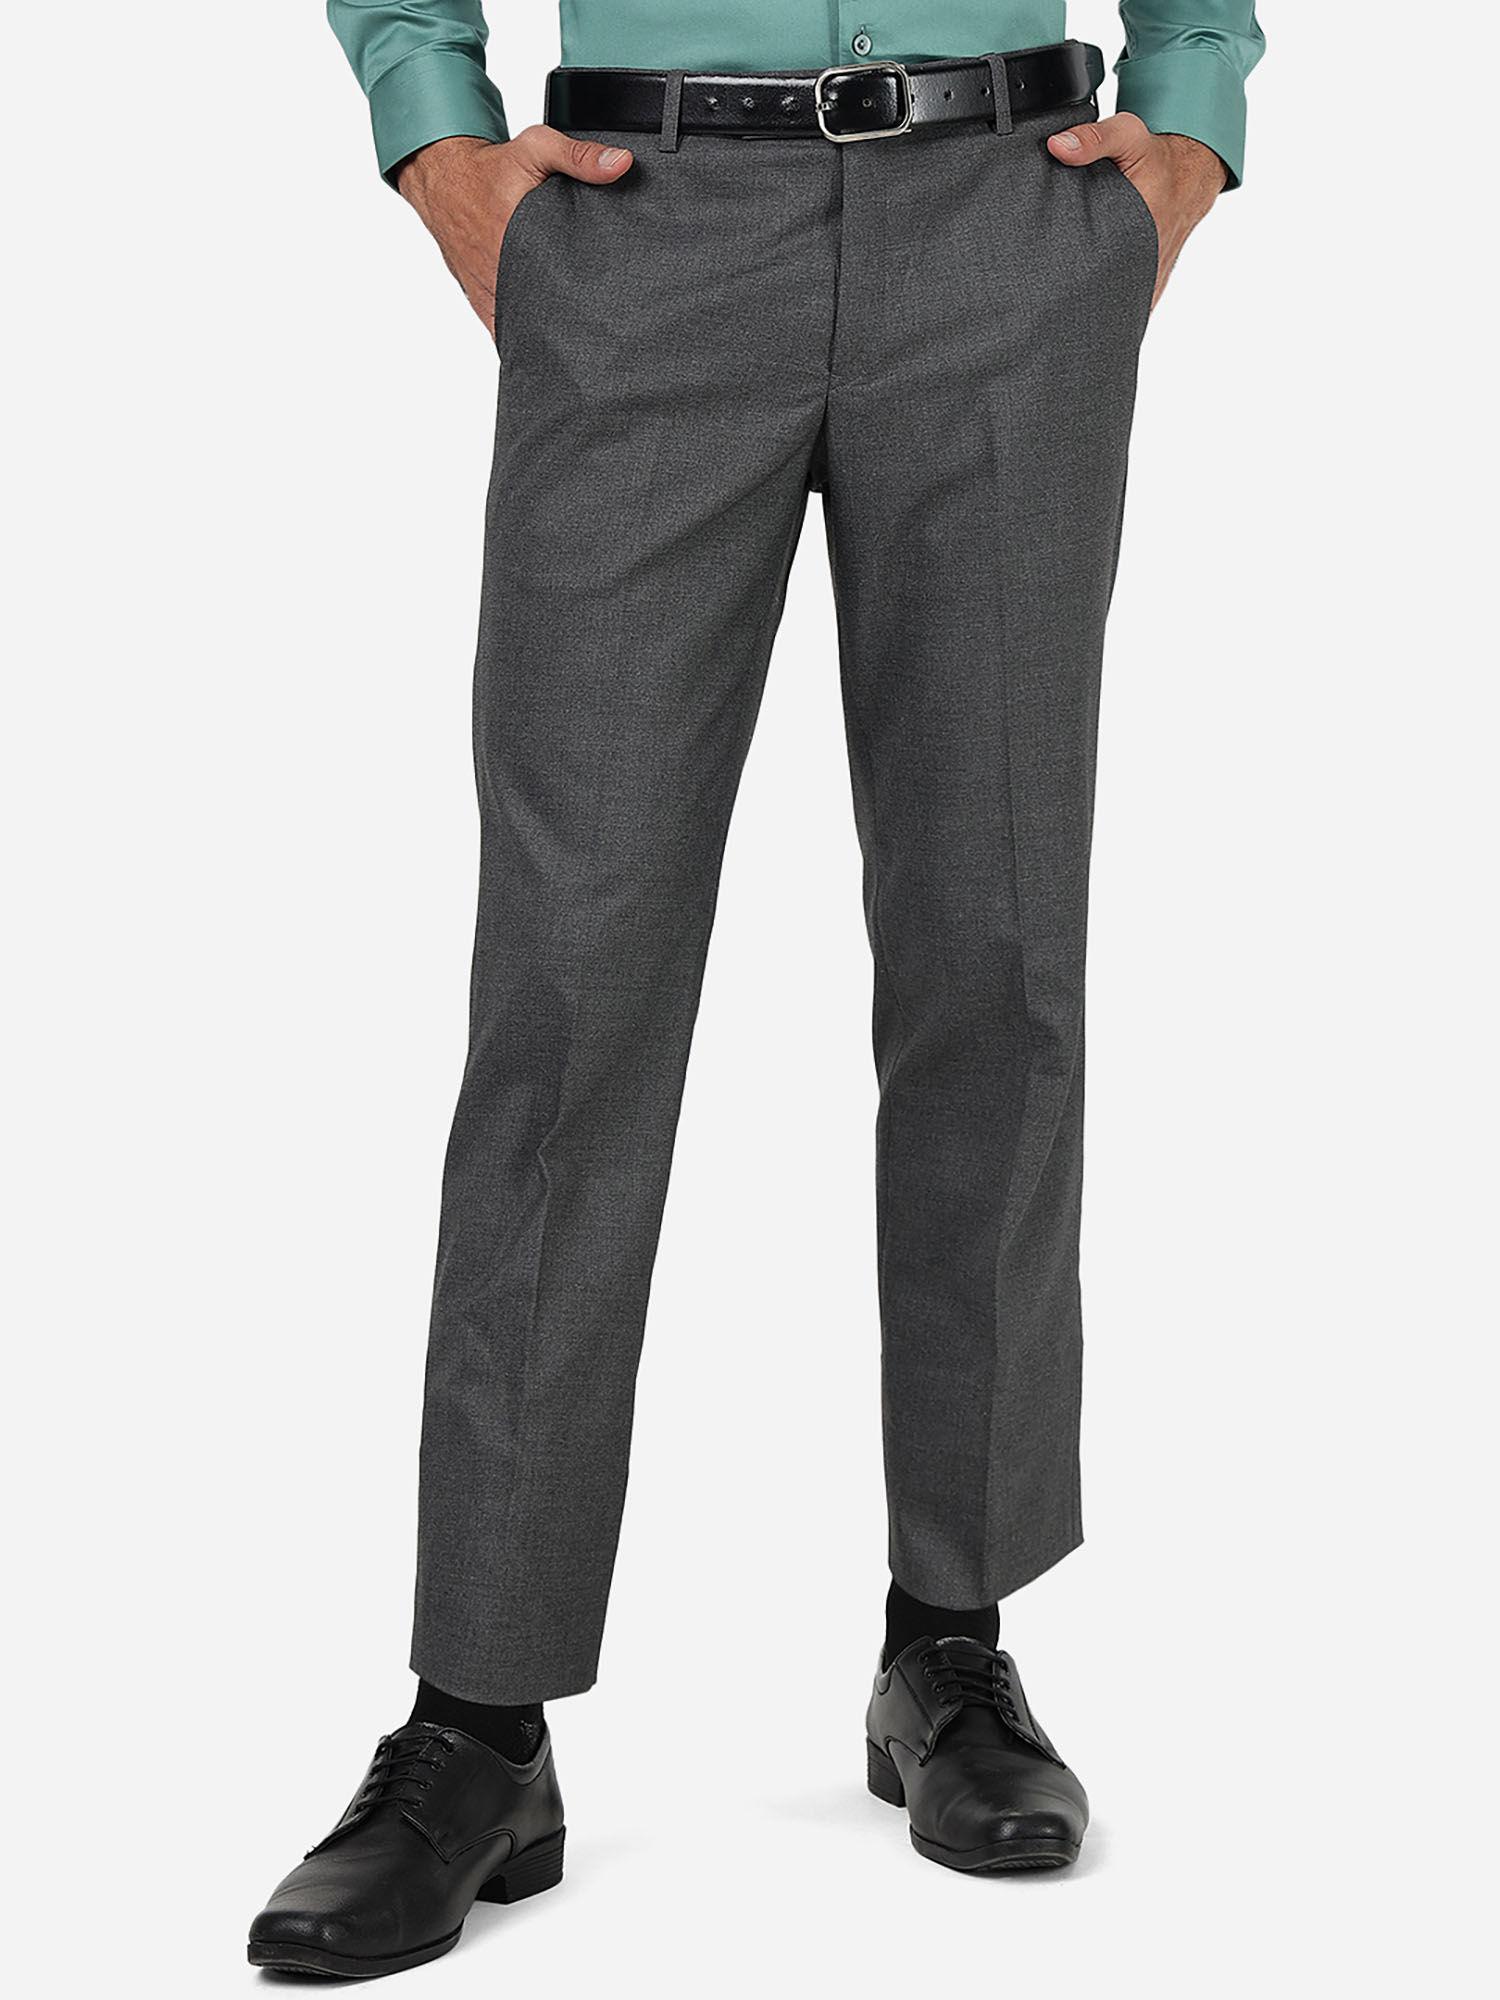 grey slim fit formal trouser